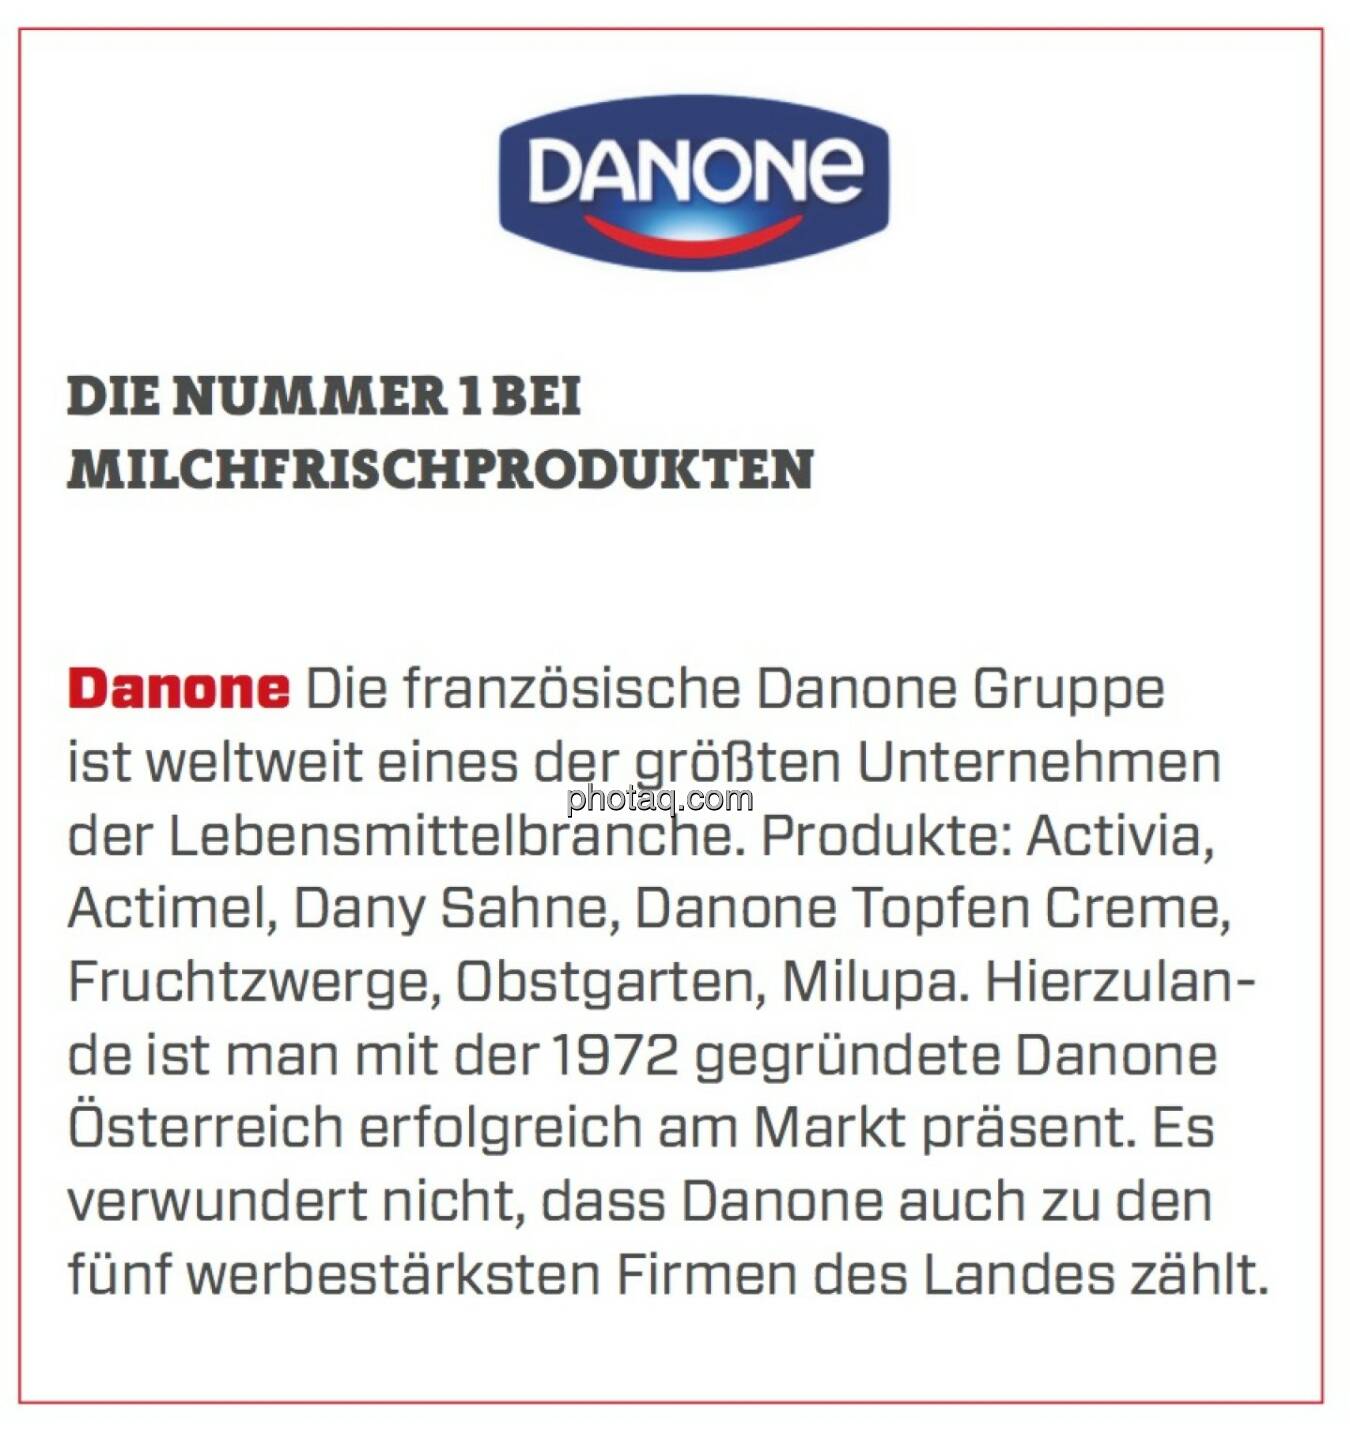 Danone - Die Nummer 1 bei Milchfrischprodukten: Die französische Danone Gruppe ist weltweit eines der größten Unternehmen der Lebensmittelbranche. Produkte: Activia, Actimel, Dany Sahne, Danone Topfen Creme, Fruchtzwerge, Obstgarten, Milupa. Hierzulande ist man mit der 1972 gegründete Danone Österreich erfolgreich am Markt präsent. Es verwundert nicht, dass Danone auch zu den fünf werbestärksten Firmen des Landes zählt.